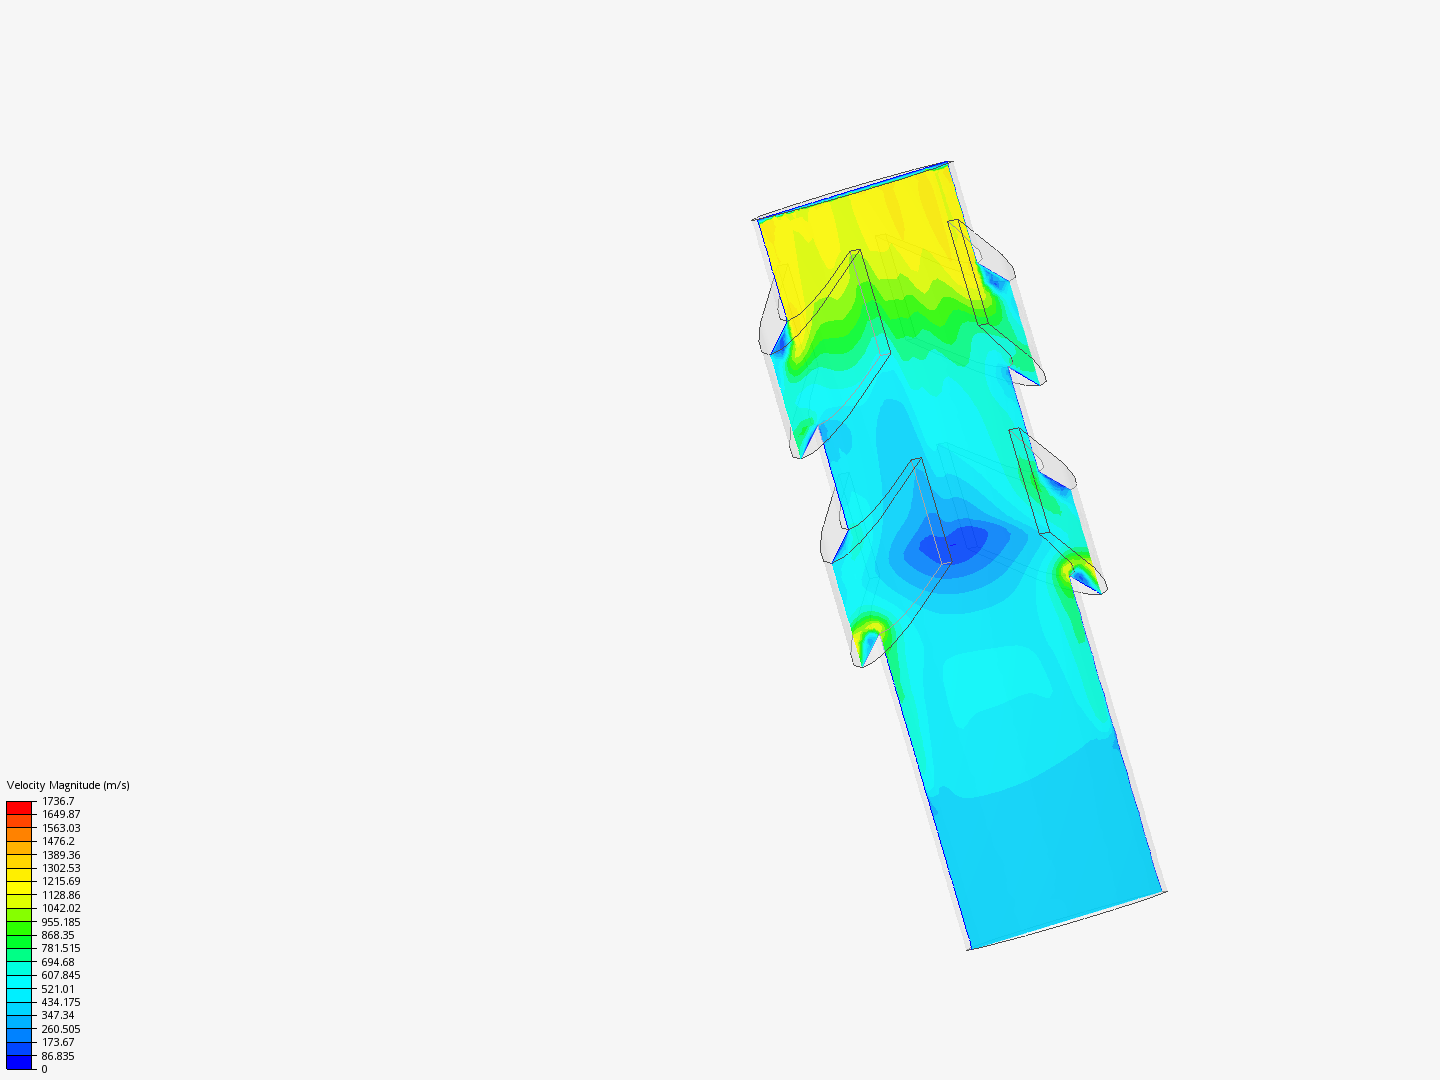 muzzle brake aerodynamic simulation image